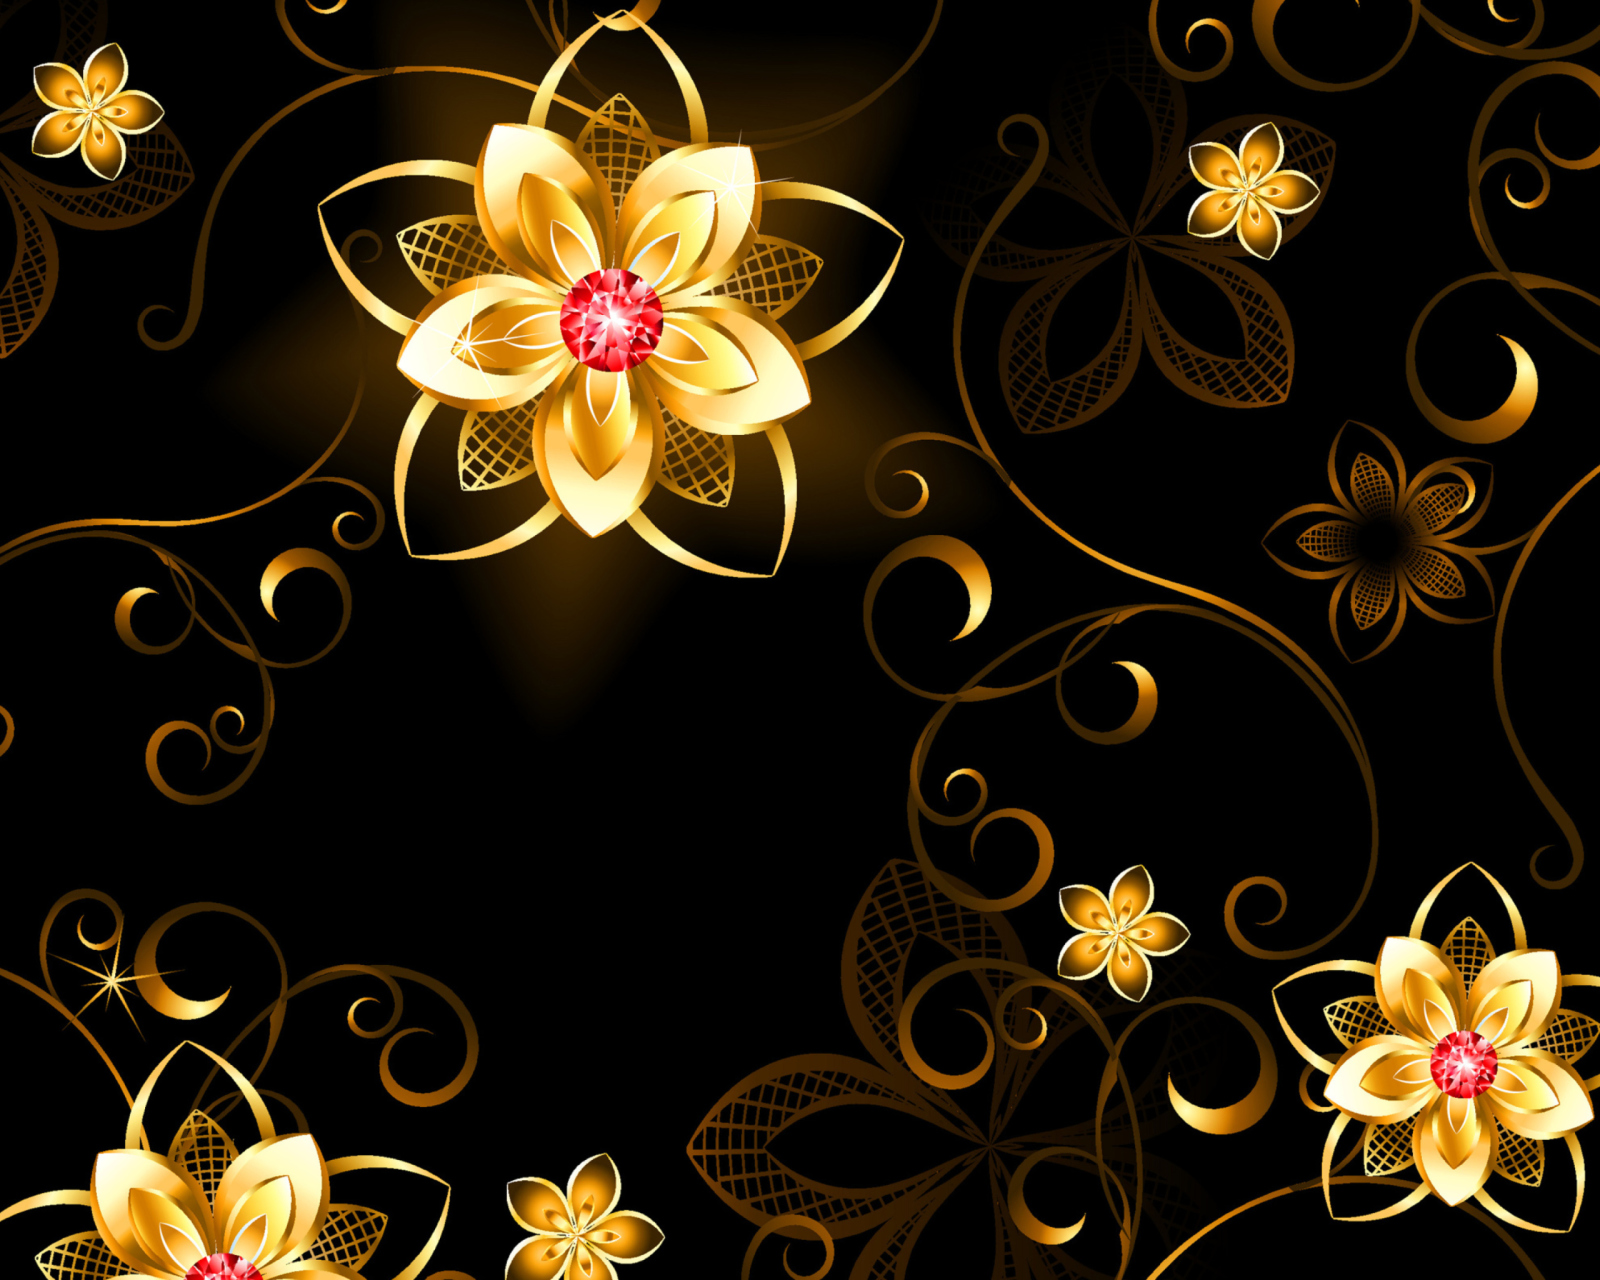 Das Golden Flowers Wallpaper 1600x1280